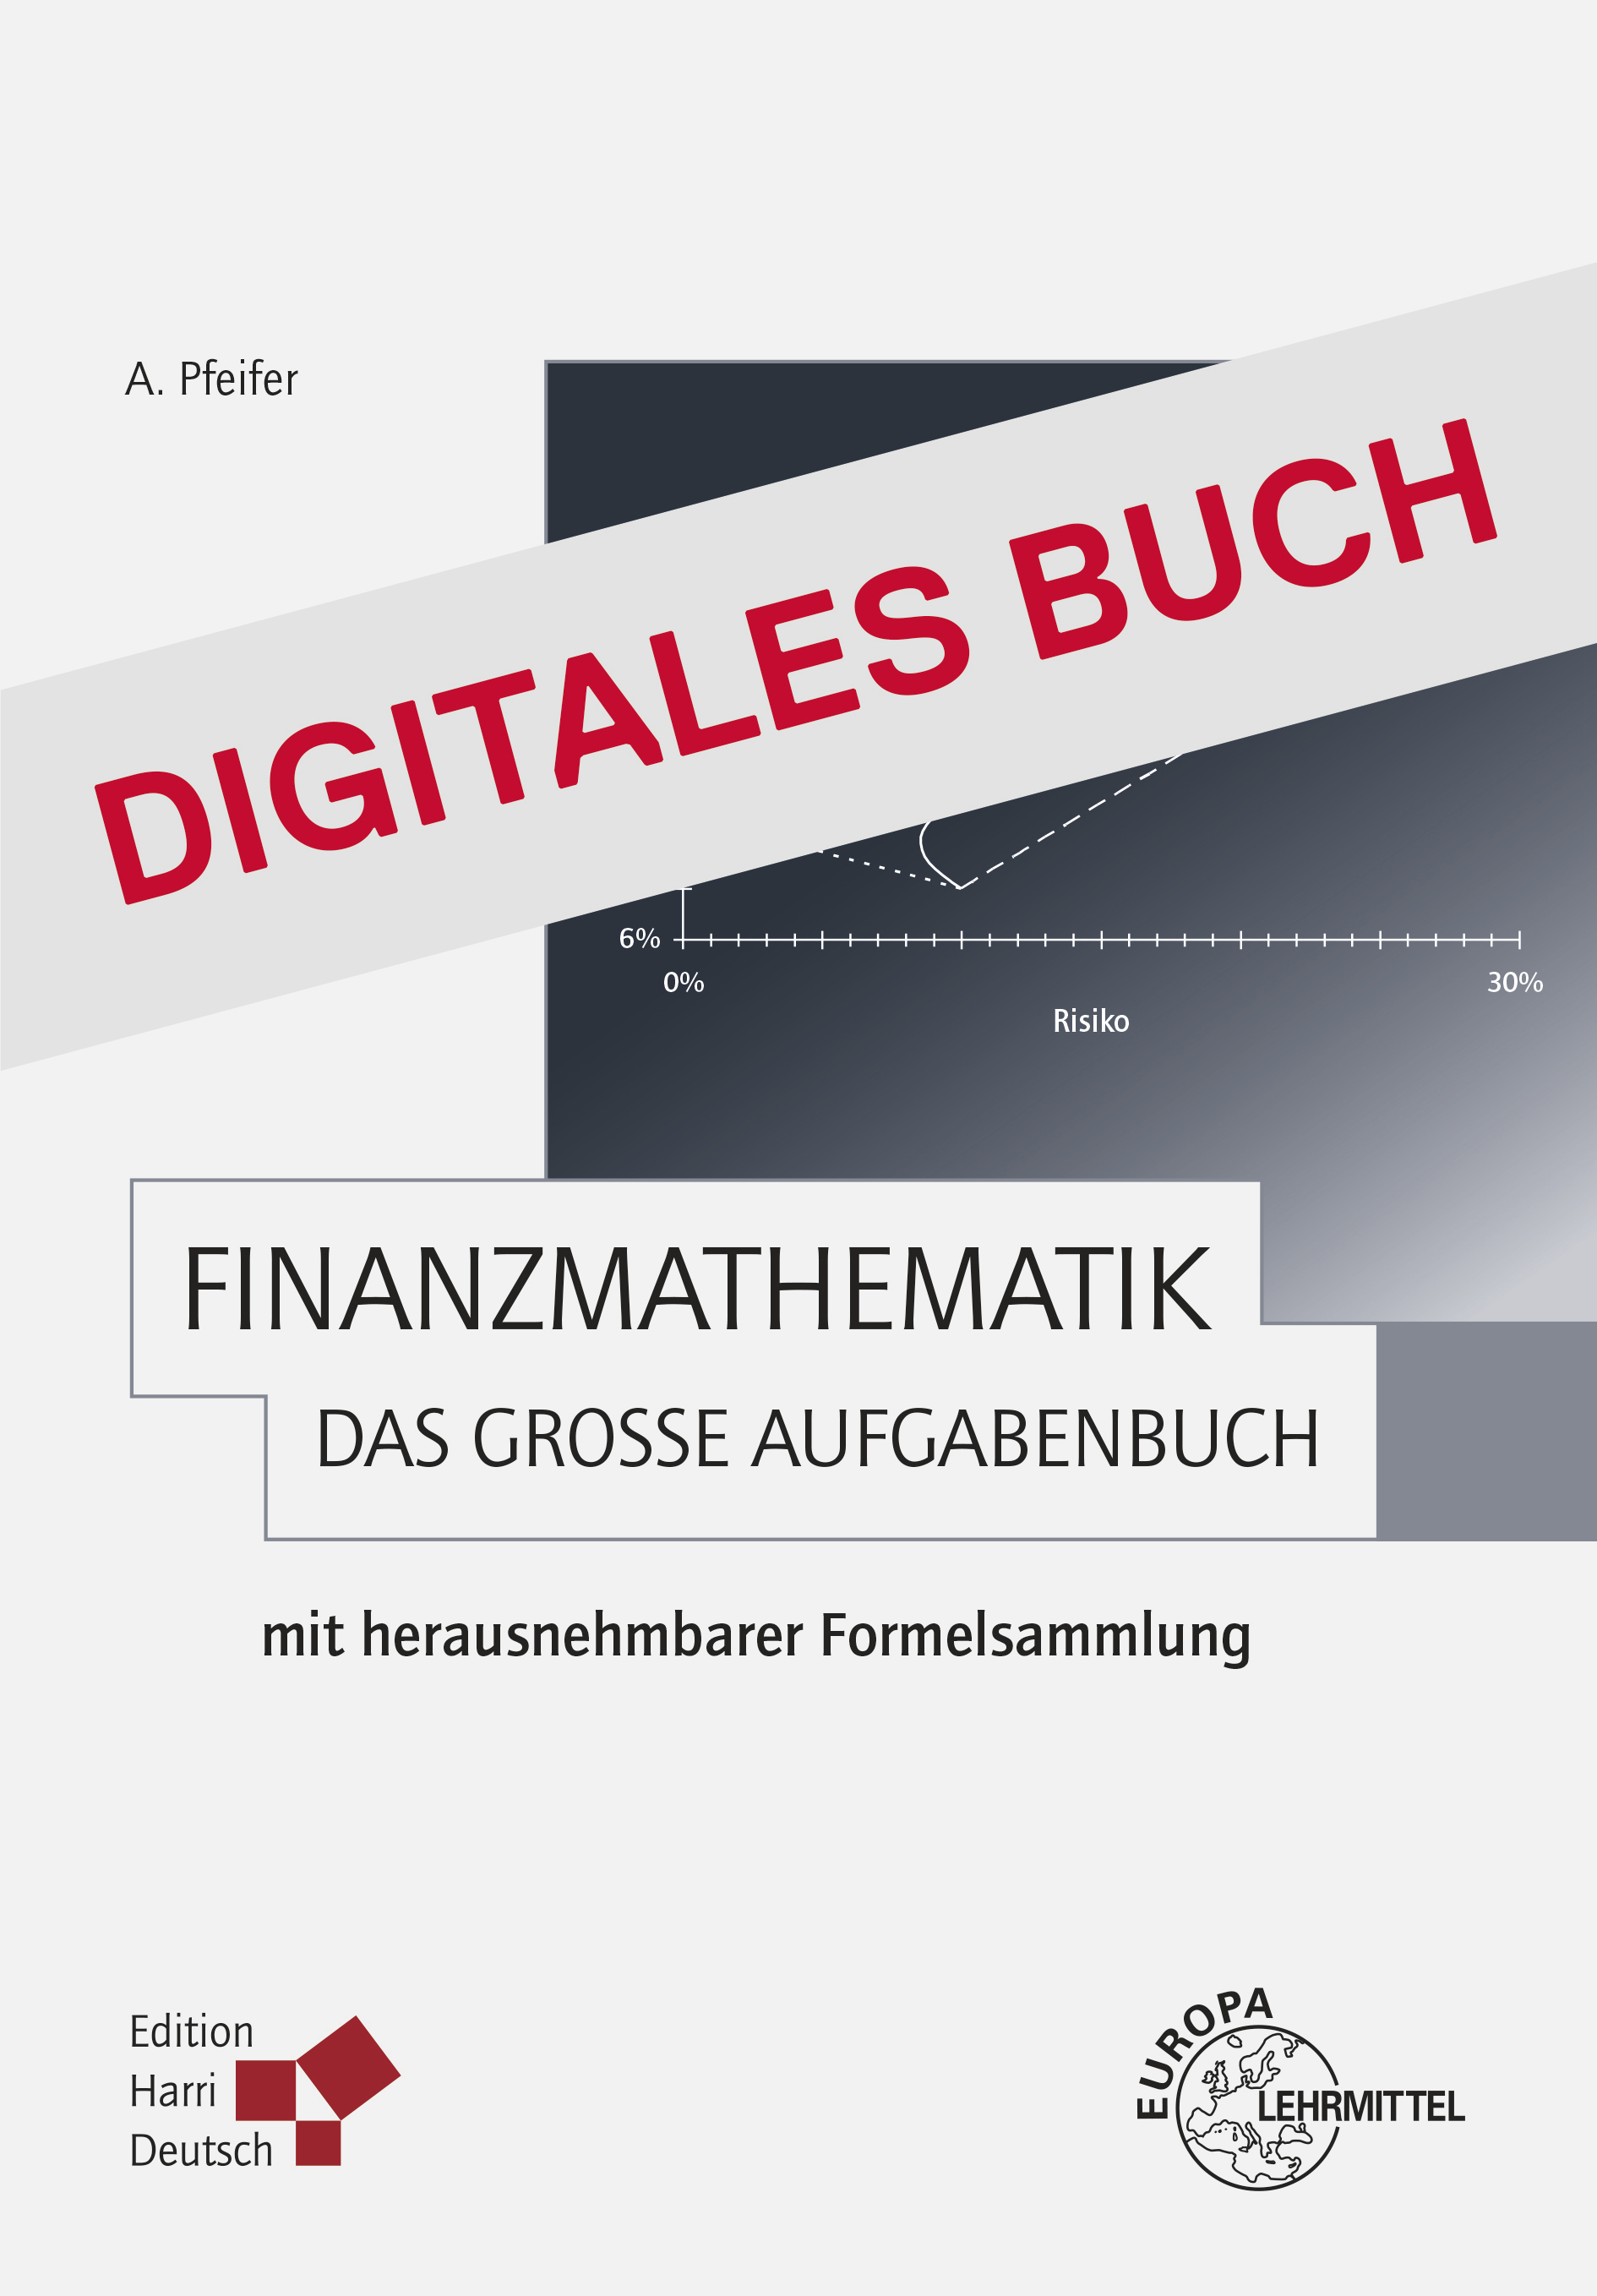 Finanzmathematik - Das große Aufgabenbuch - Digitales Buch